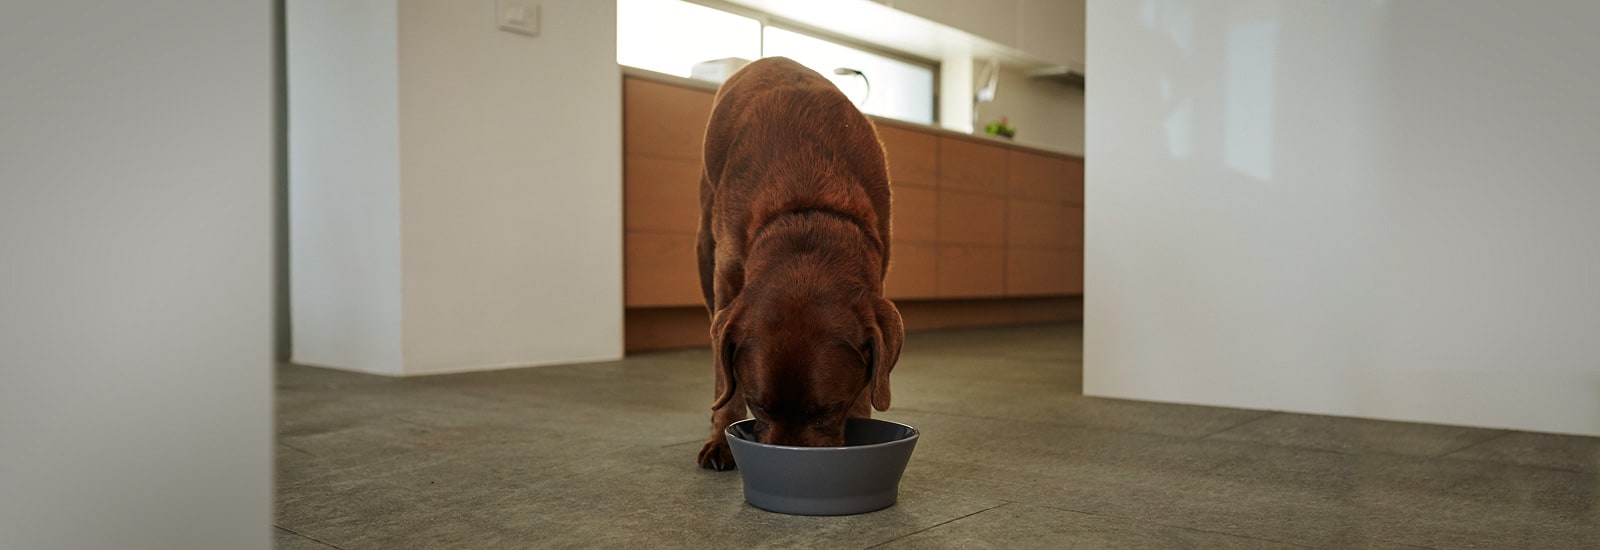 Feeding your dog properly